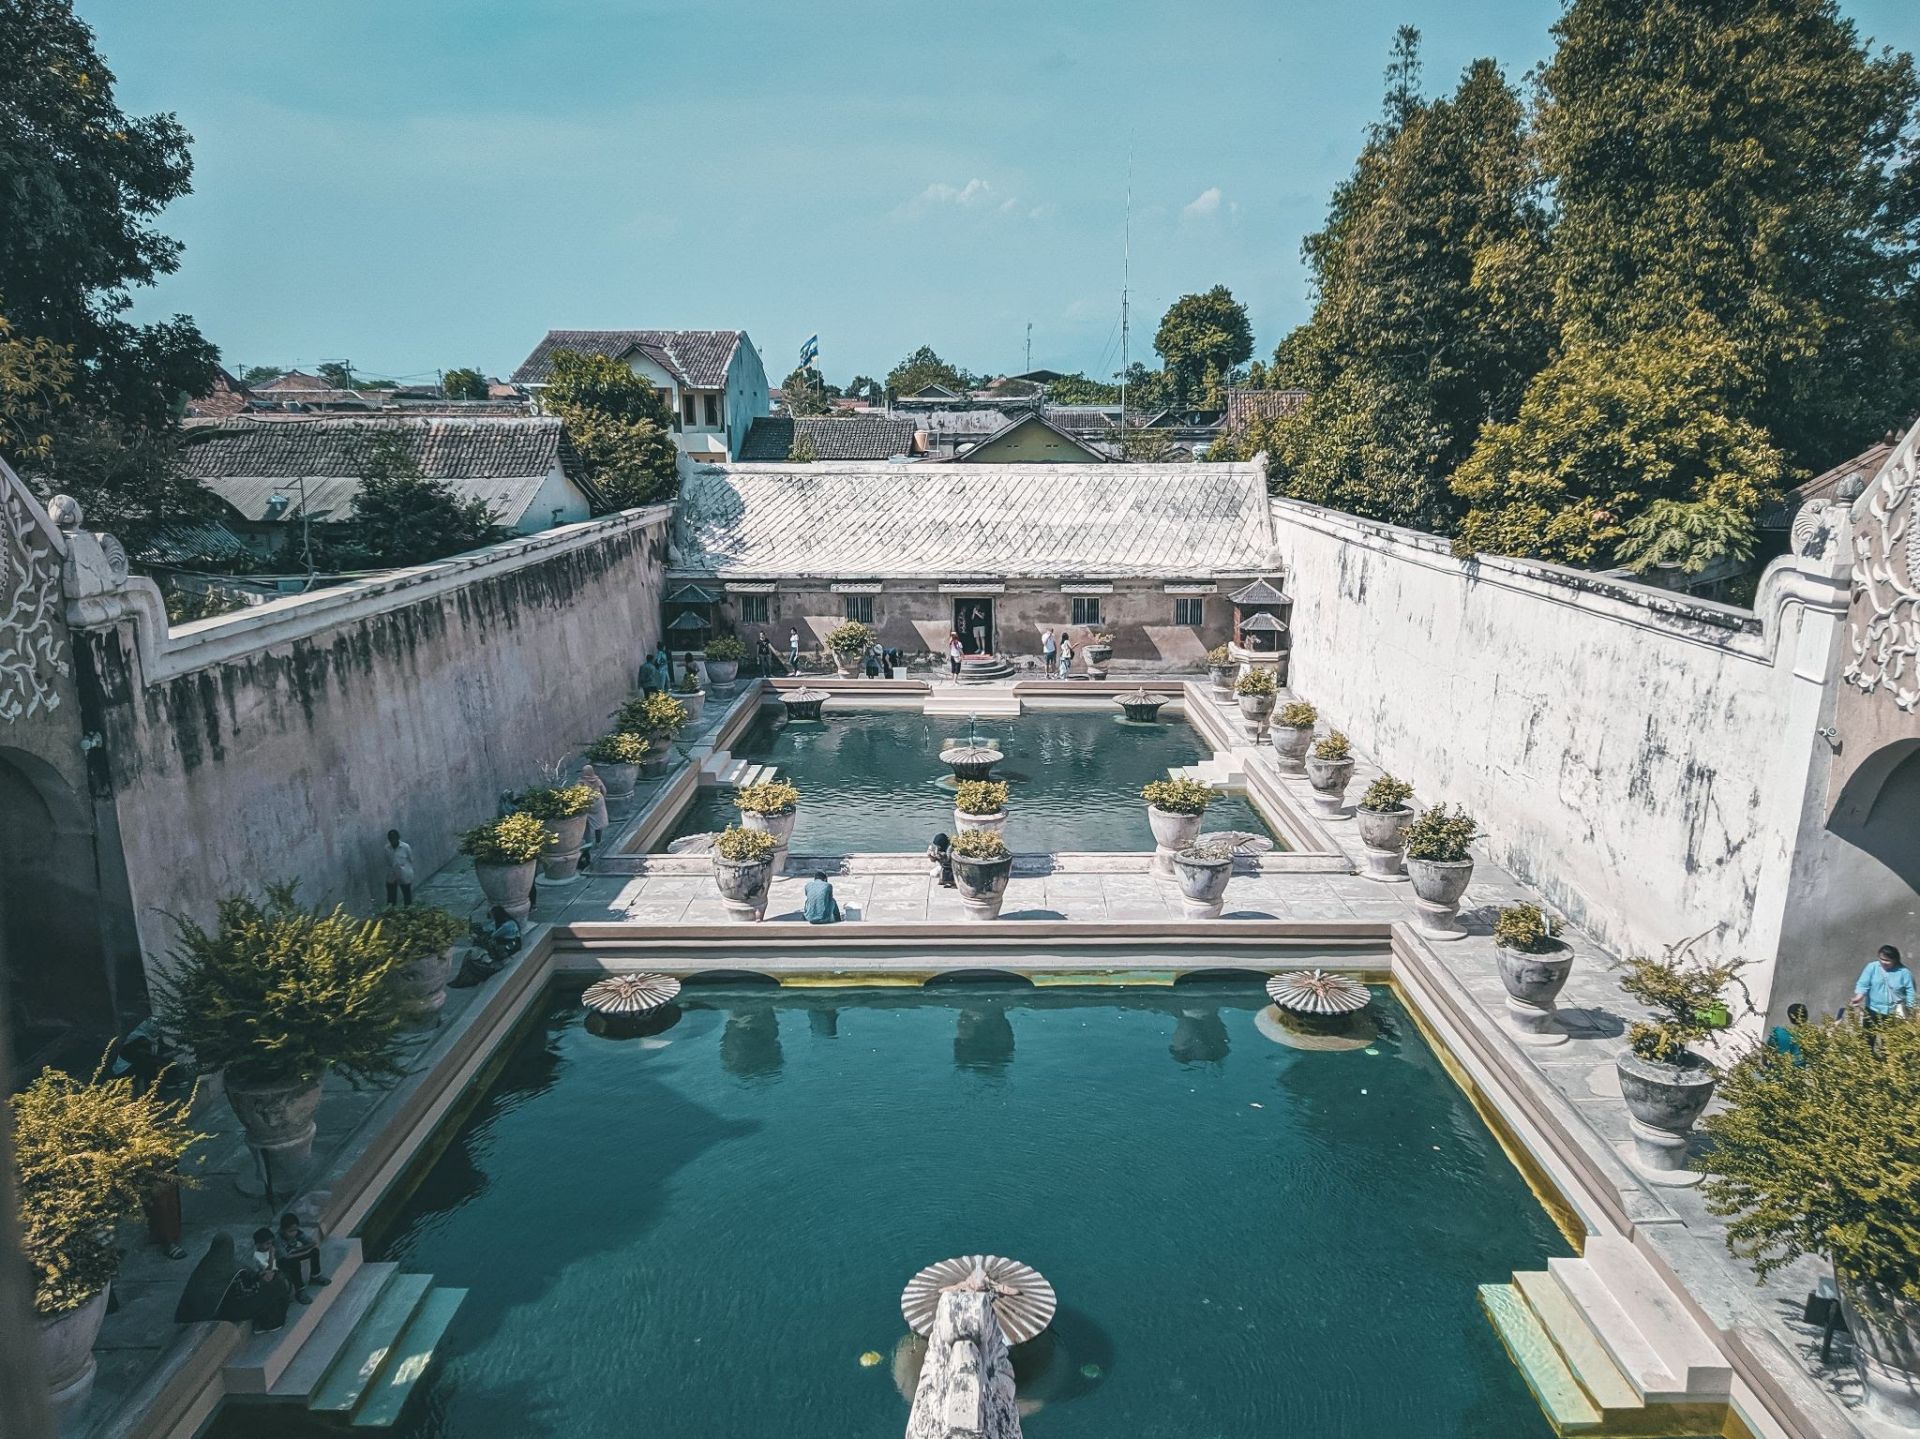  Liburan Gak Harus Mahal, Berikut Empat Aktivitas Wisata Affordable di Yogyakarta